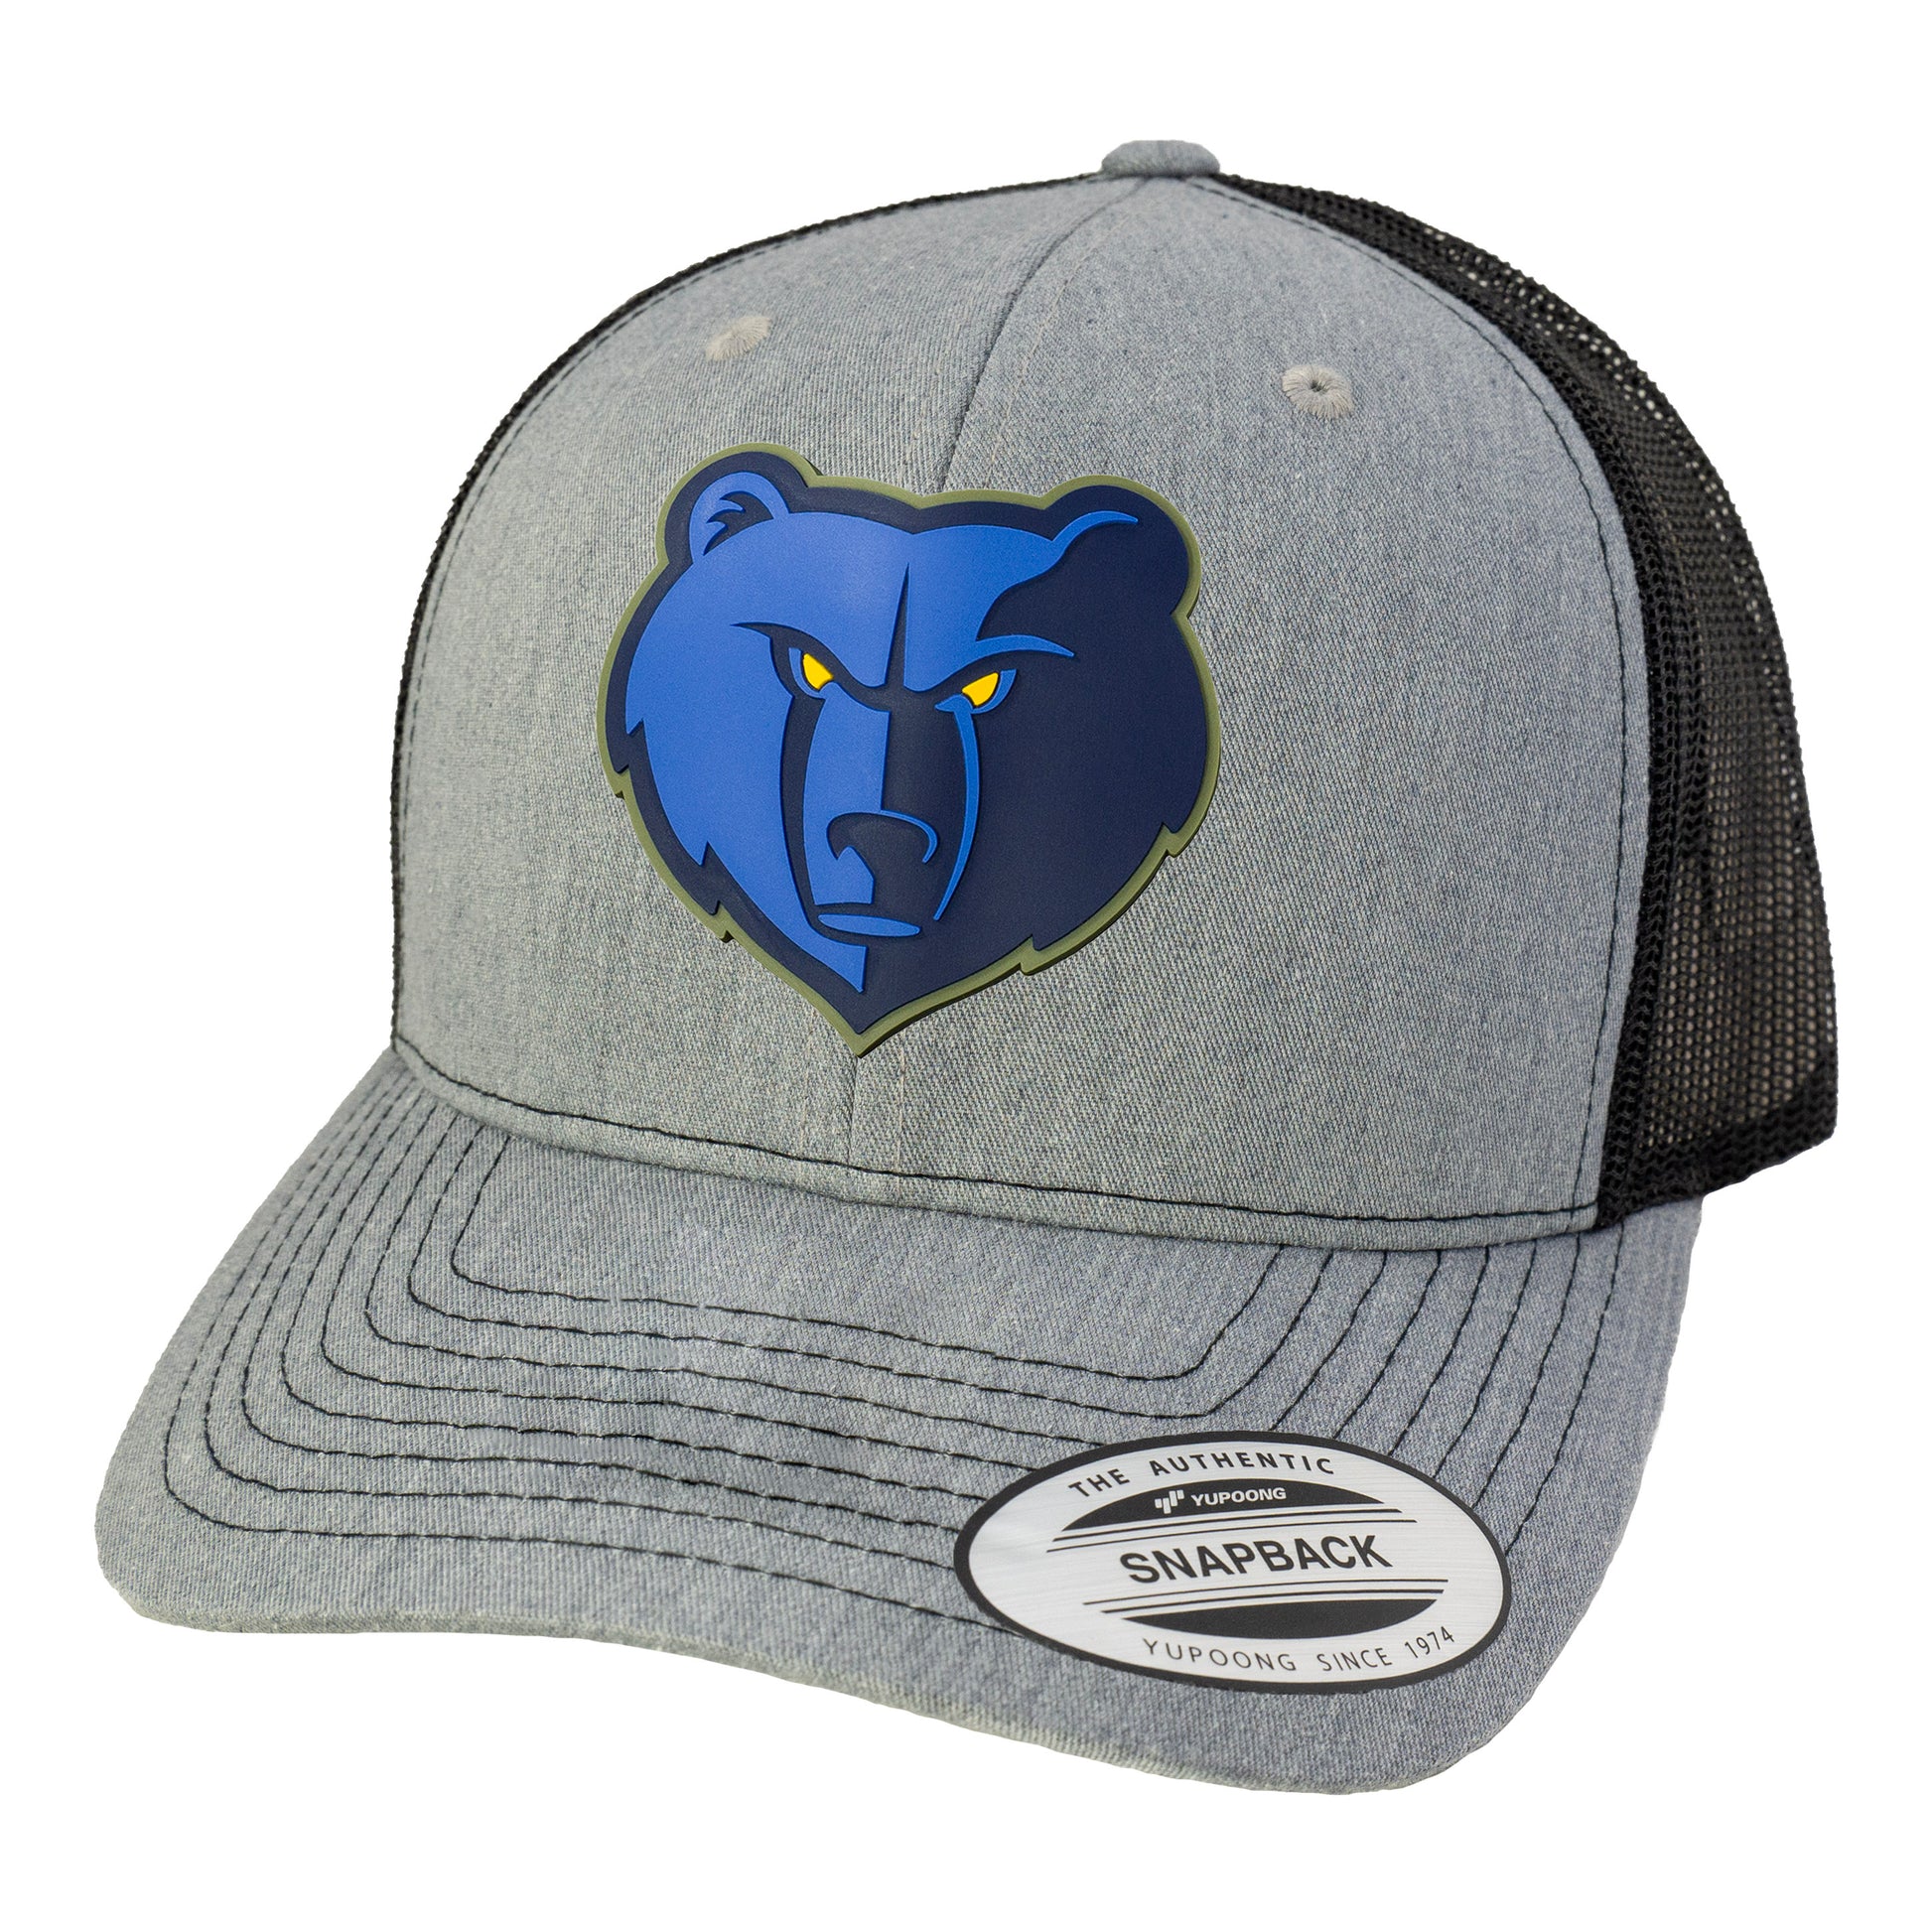 Memphis Grizzlies 3D YP Snapback Trucker Hat- Heather Grey/ Black - Ten Gallon Hat Co.